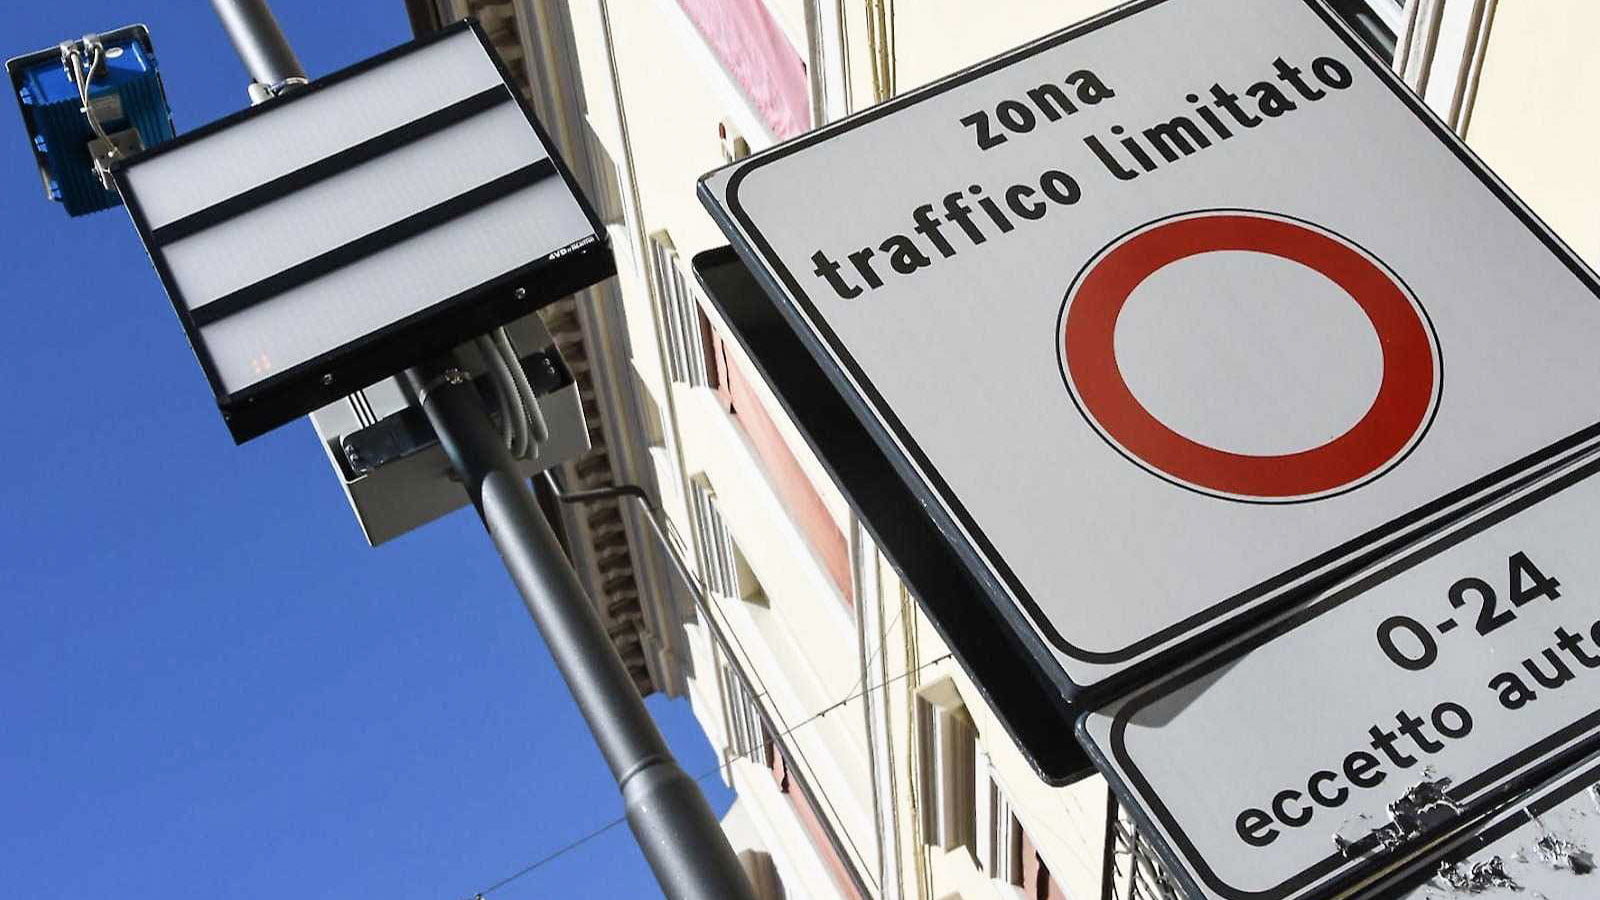 przepisy drogowe we Włoszech